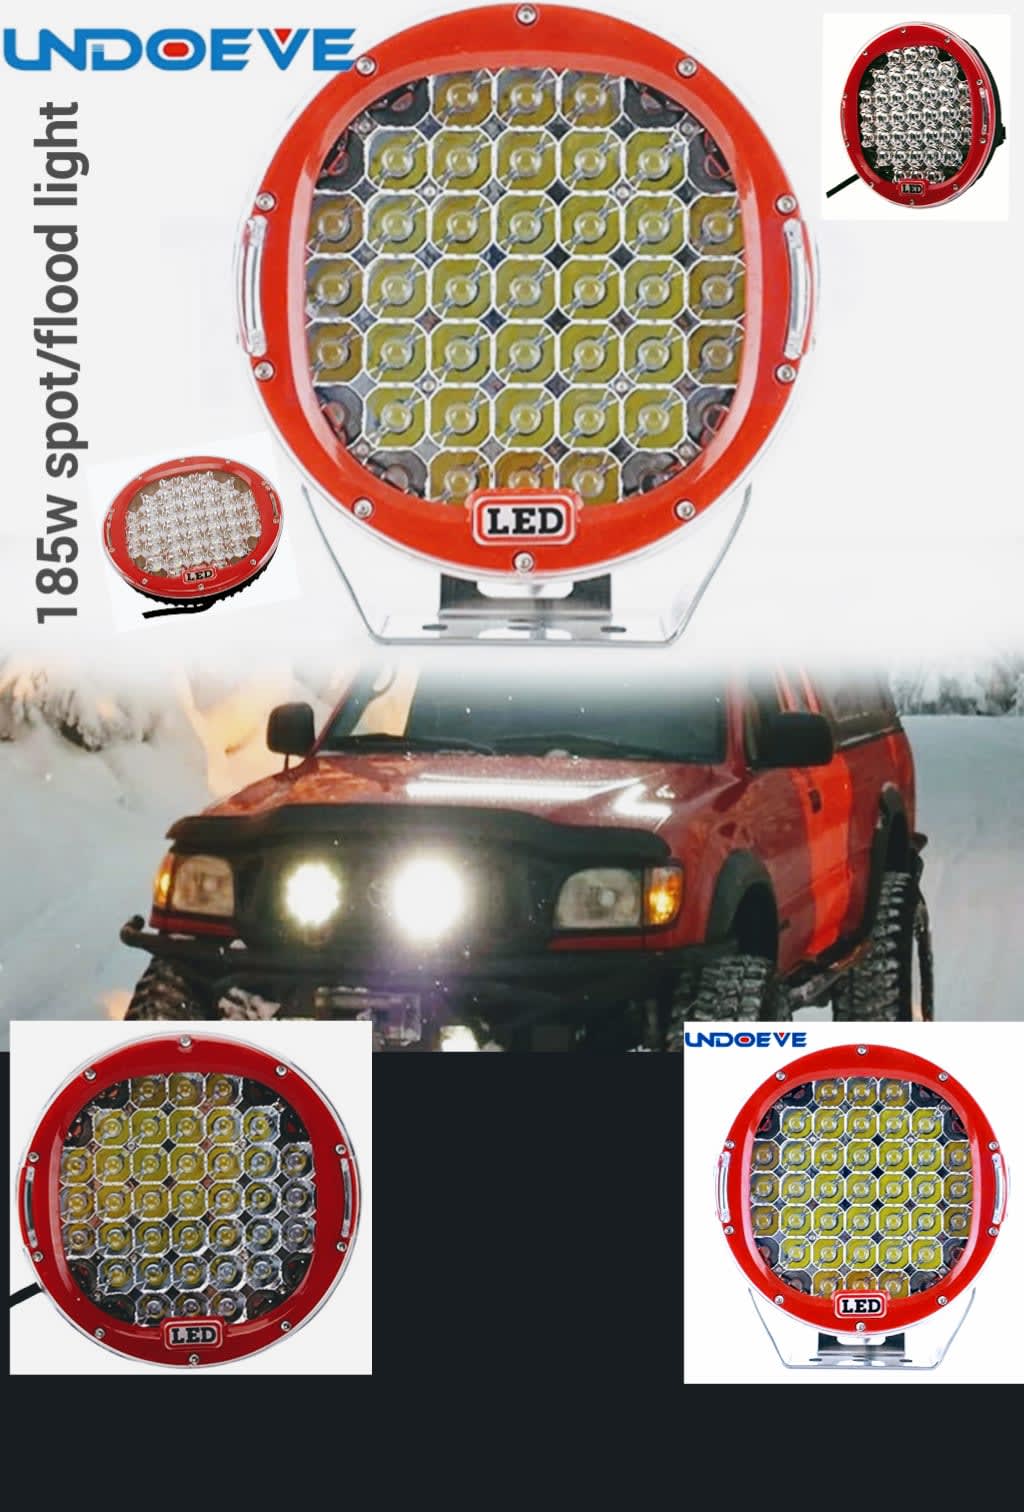 4x 7 51W Round LED Work Lights Spot Flood 12V 24V Offroad Car Fog Lamp